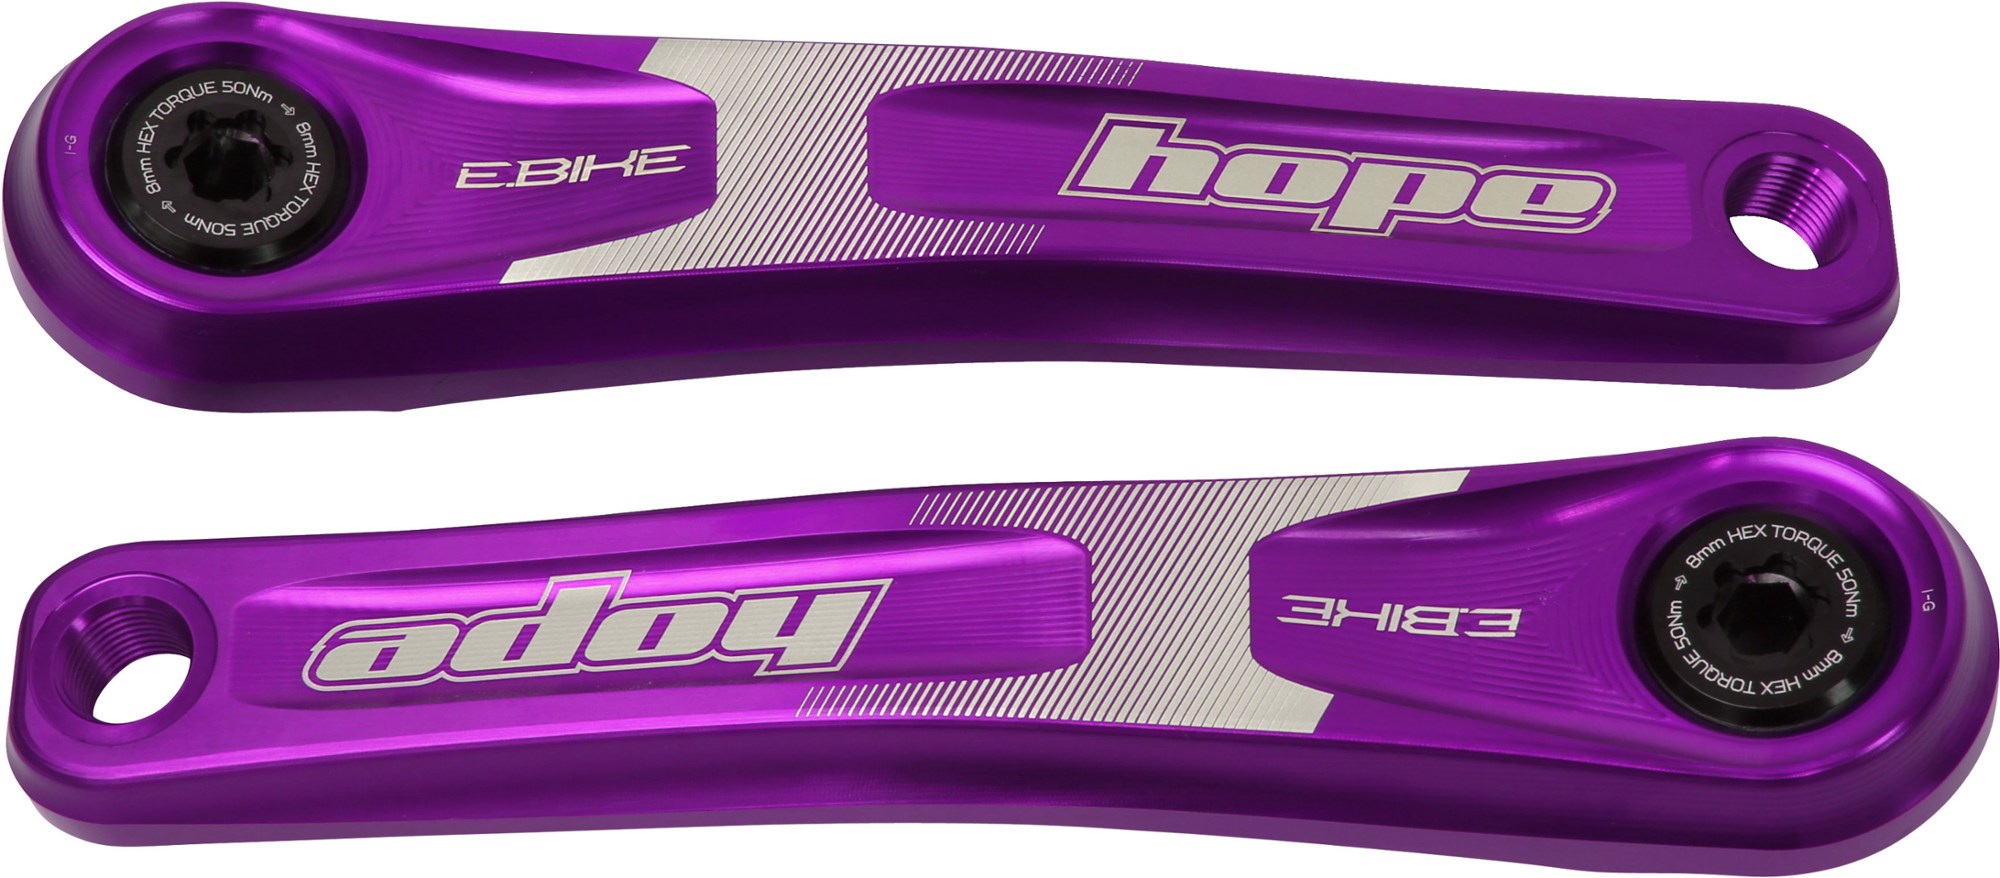 Комплект шатунов для электронного велосипеда Hope, фиолетовый